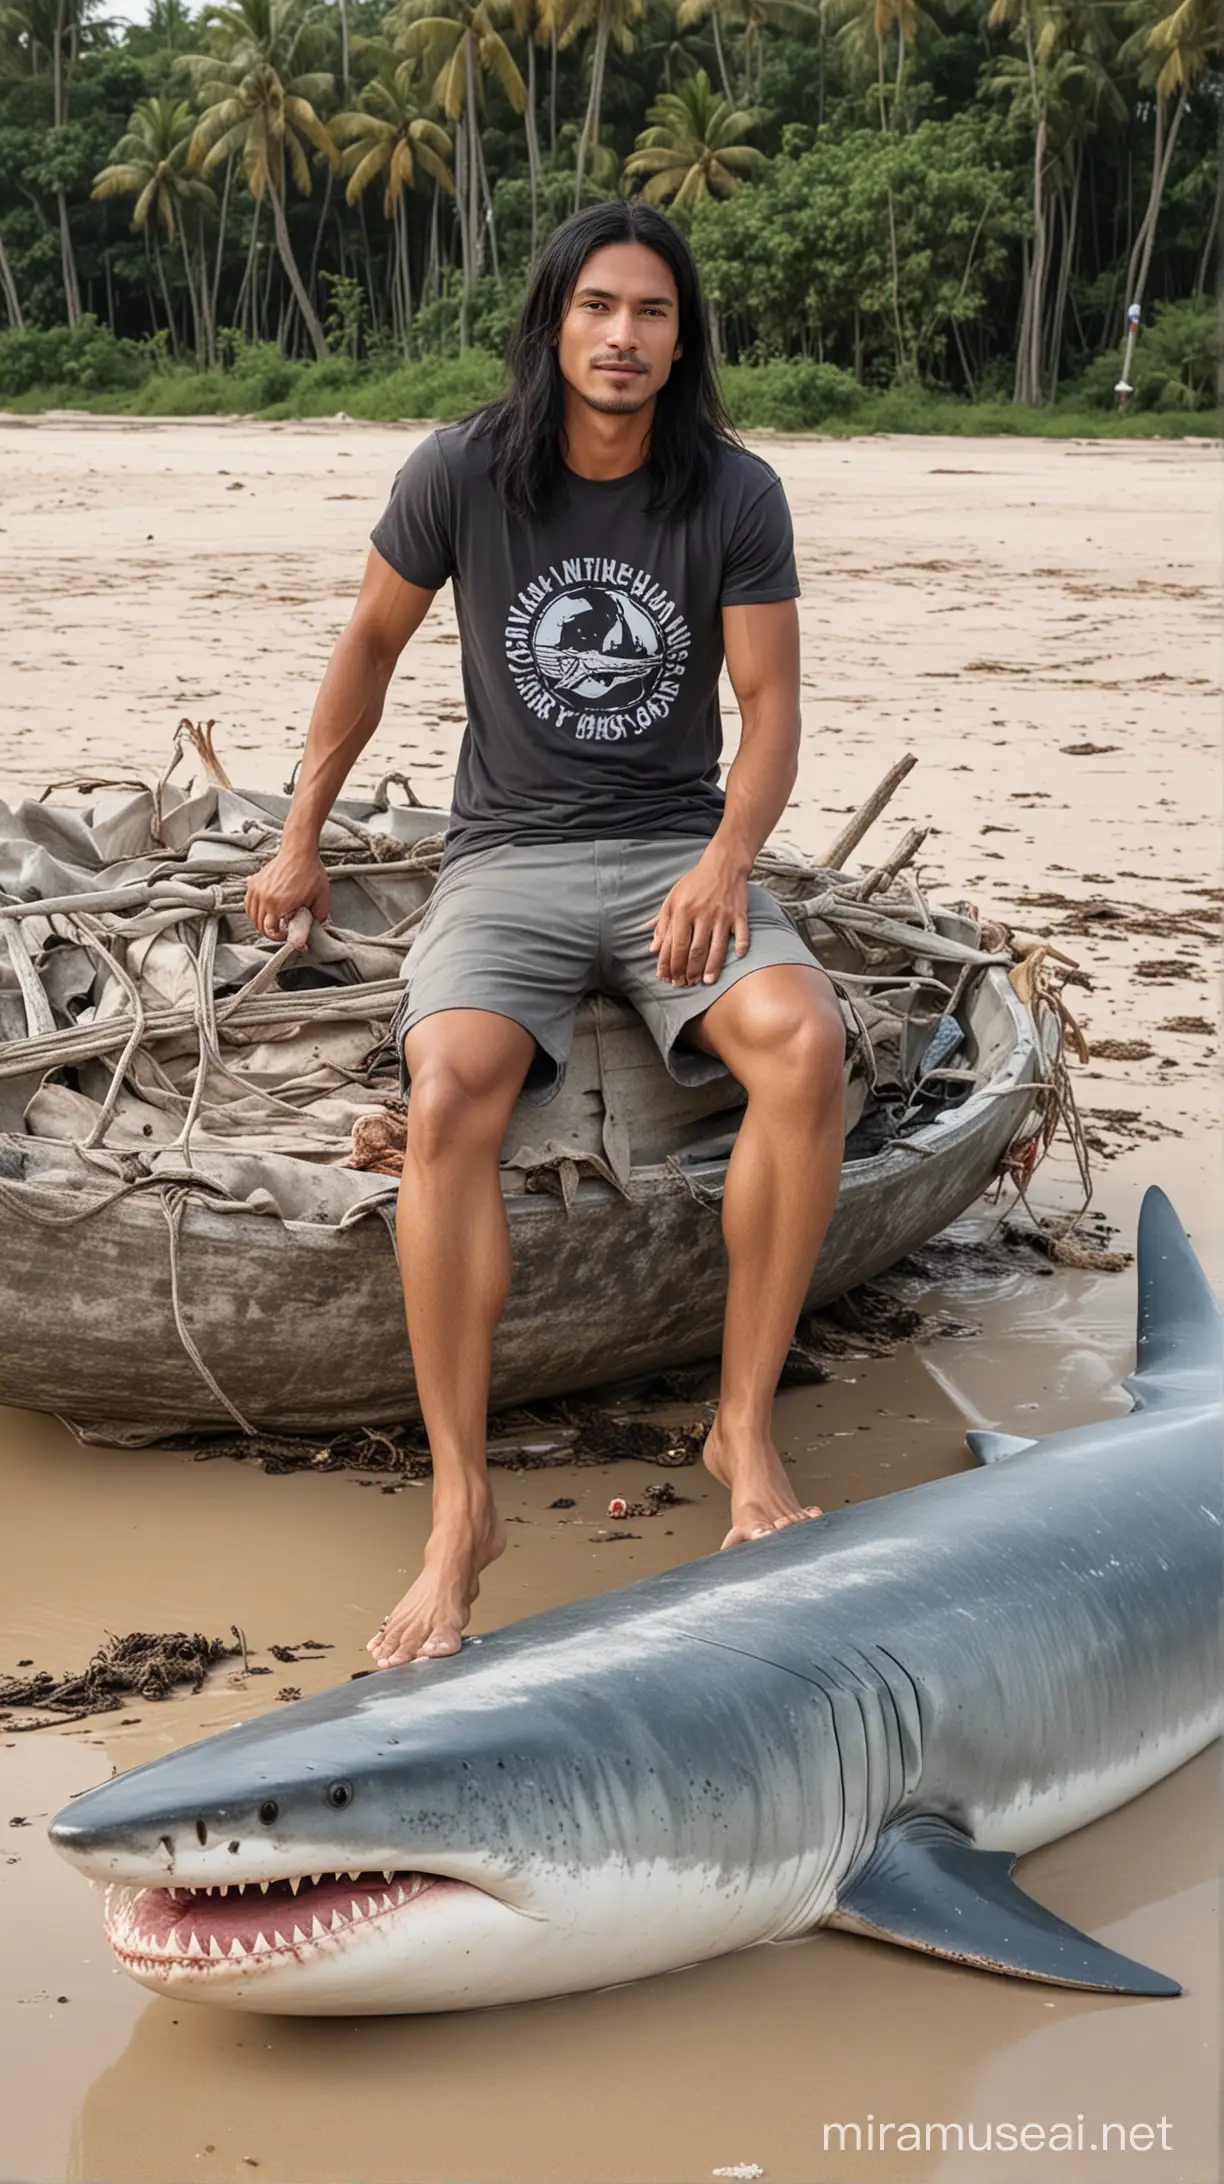 Surfer with Long Black Hair Sitting on Giant Shark Carcass on Thailand Beach